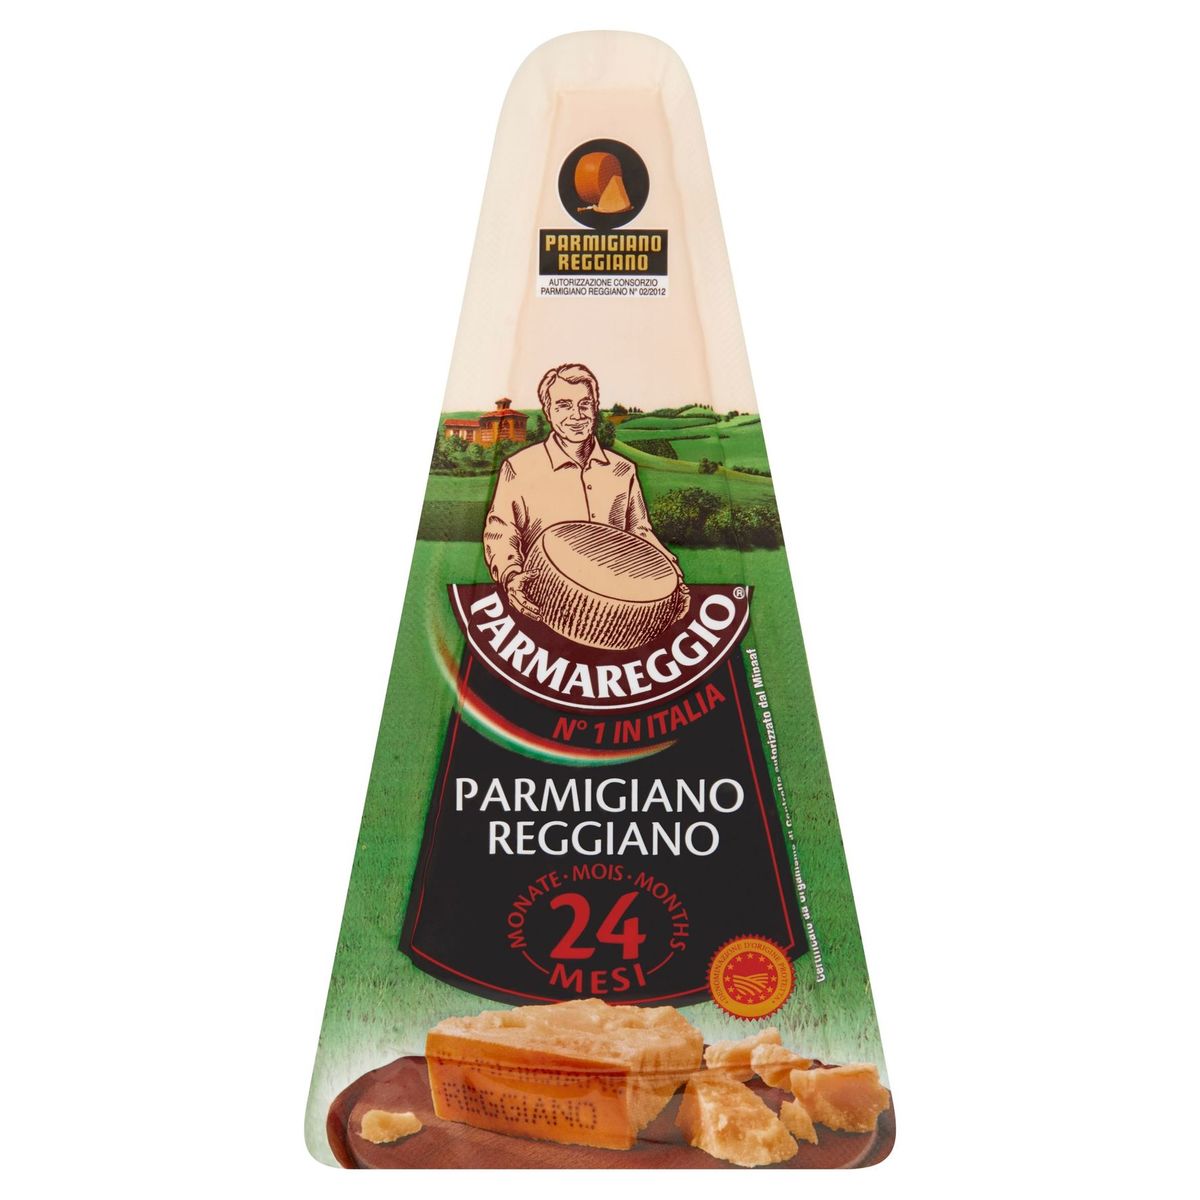 Parmareggio Parmigiano Reggiano 200 g